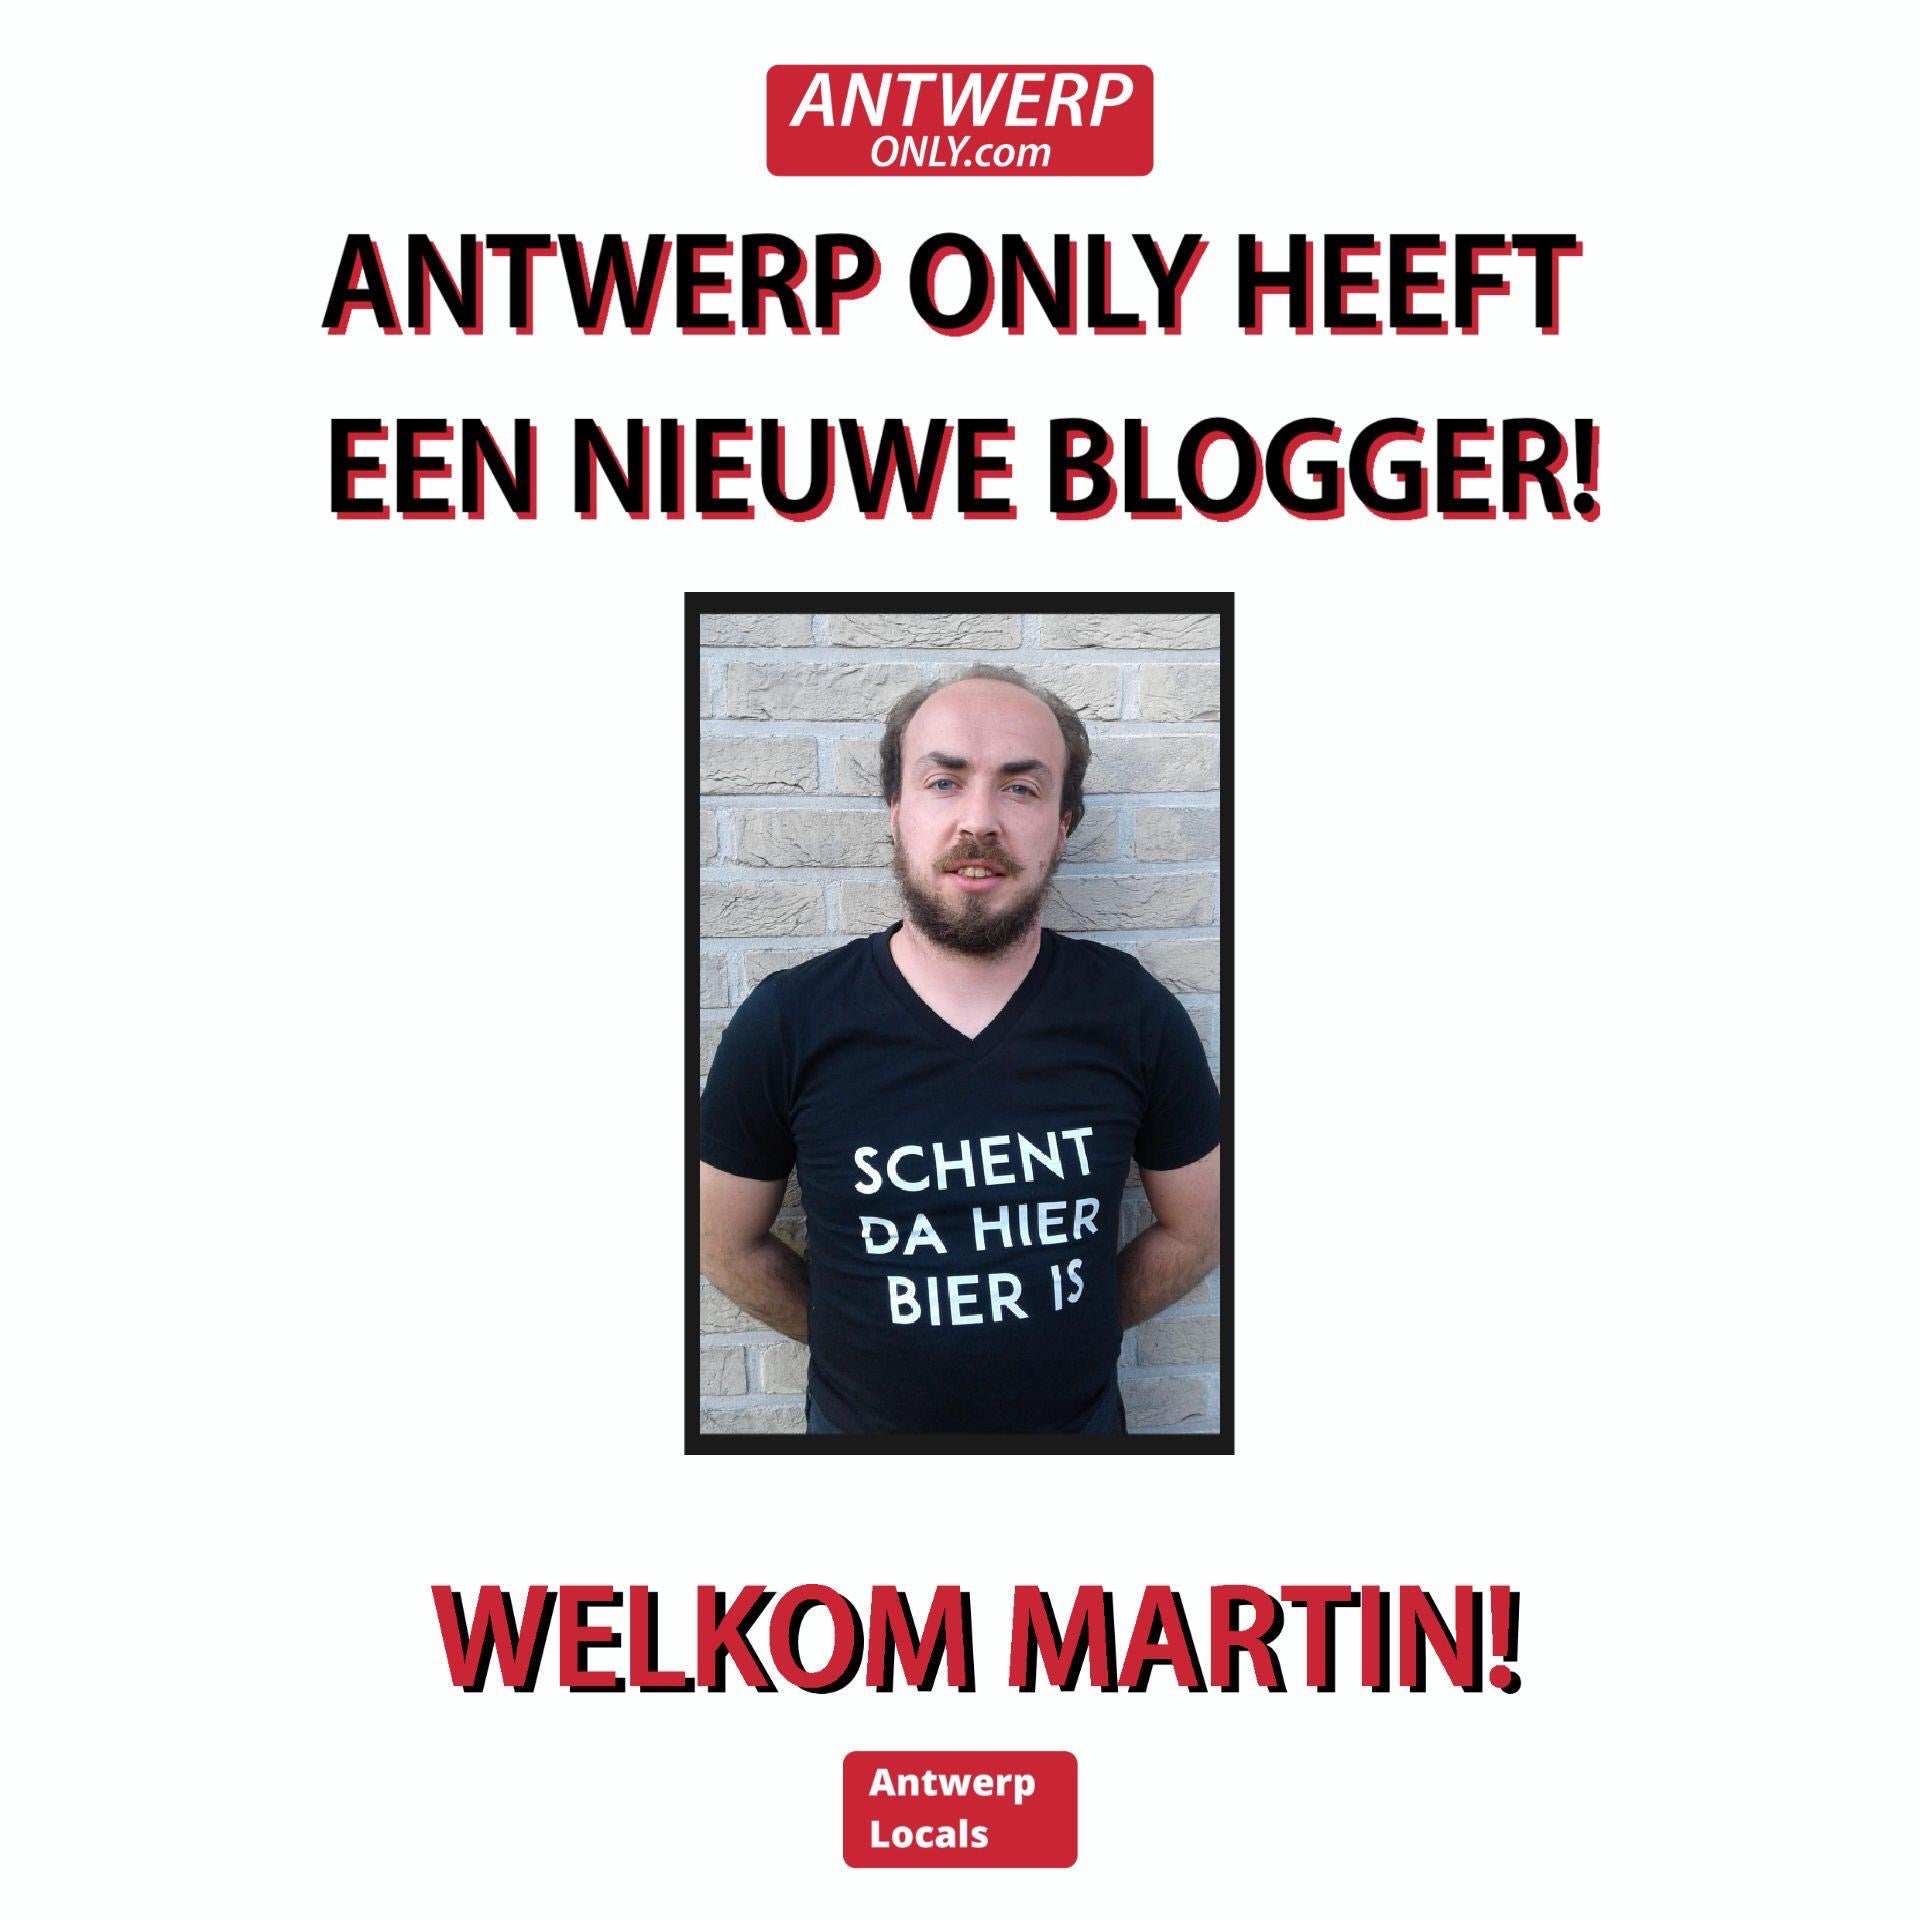 Maak kennis met onze nieuwe Antwerpse blogger Martin